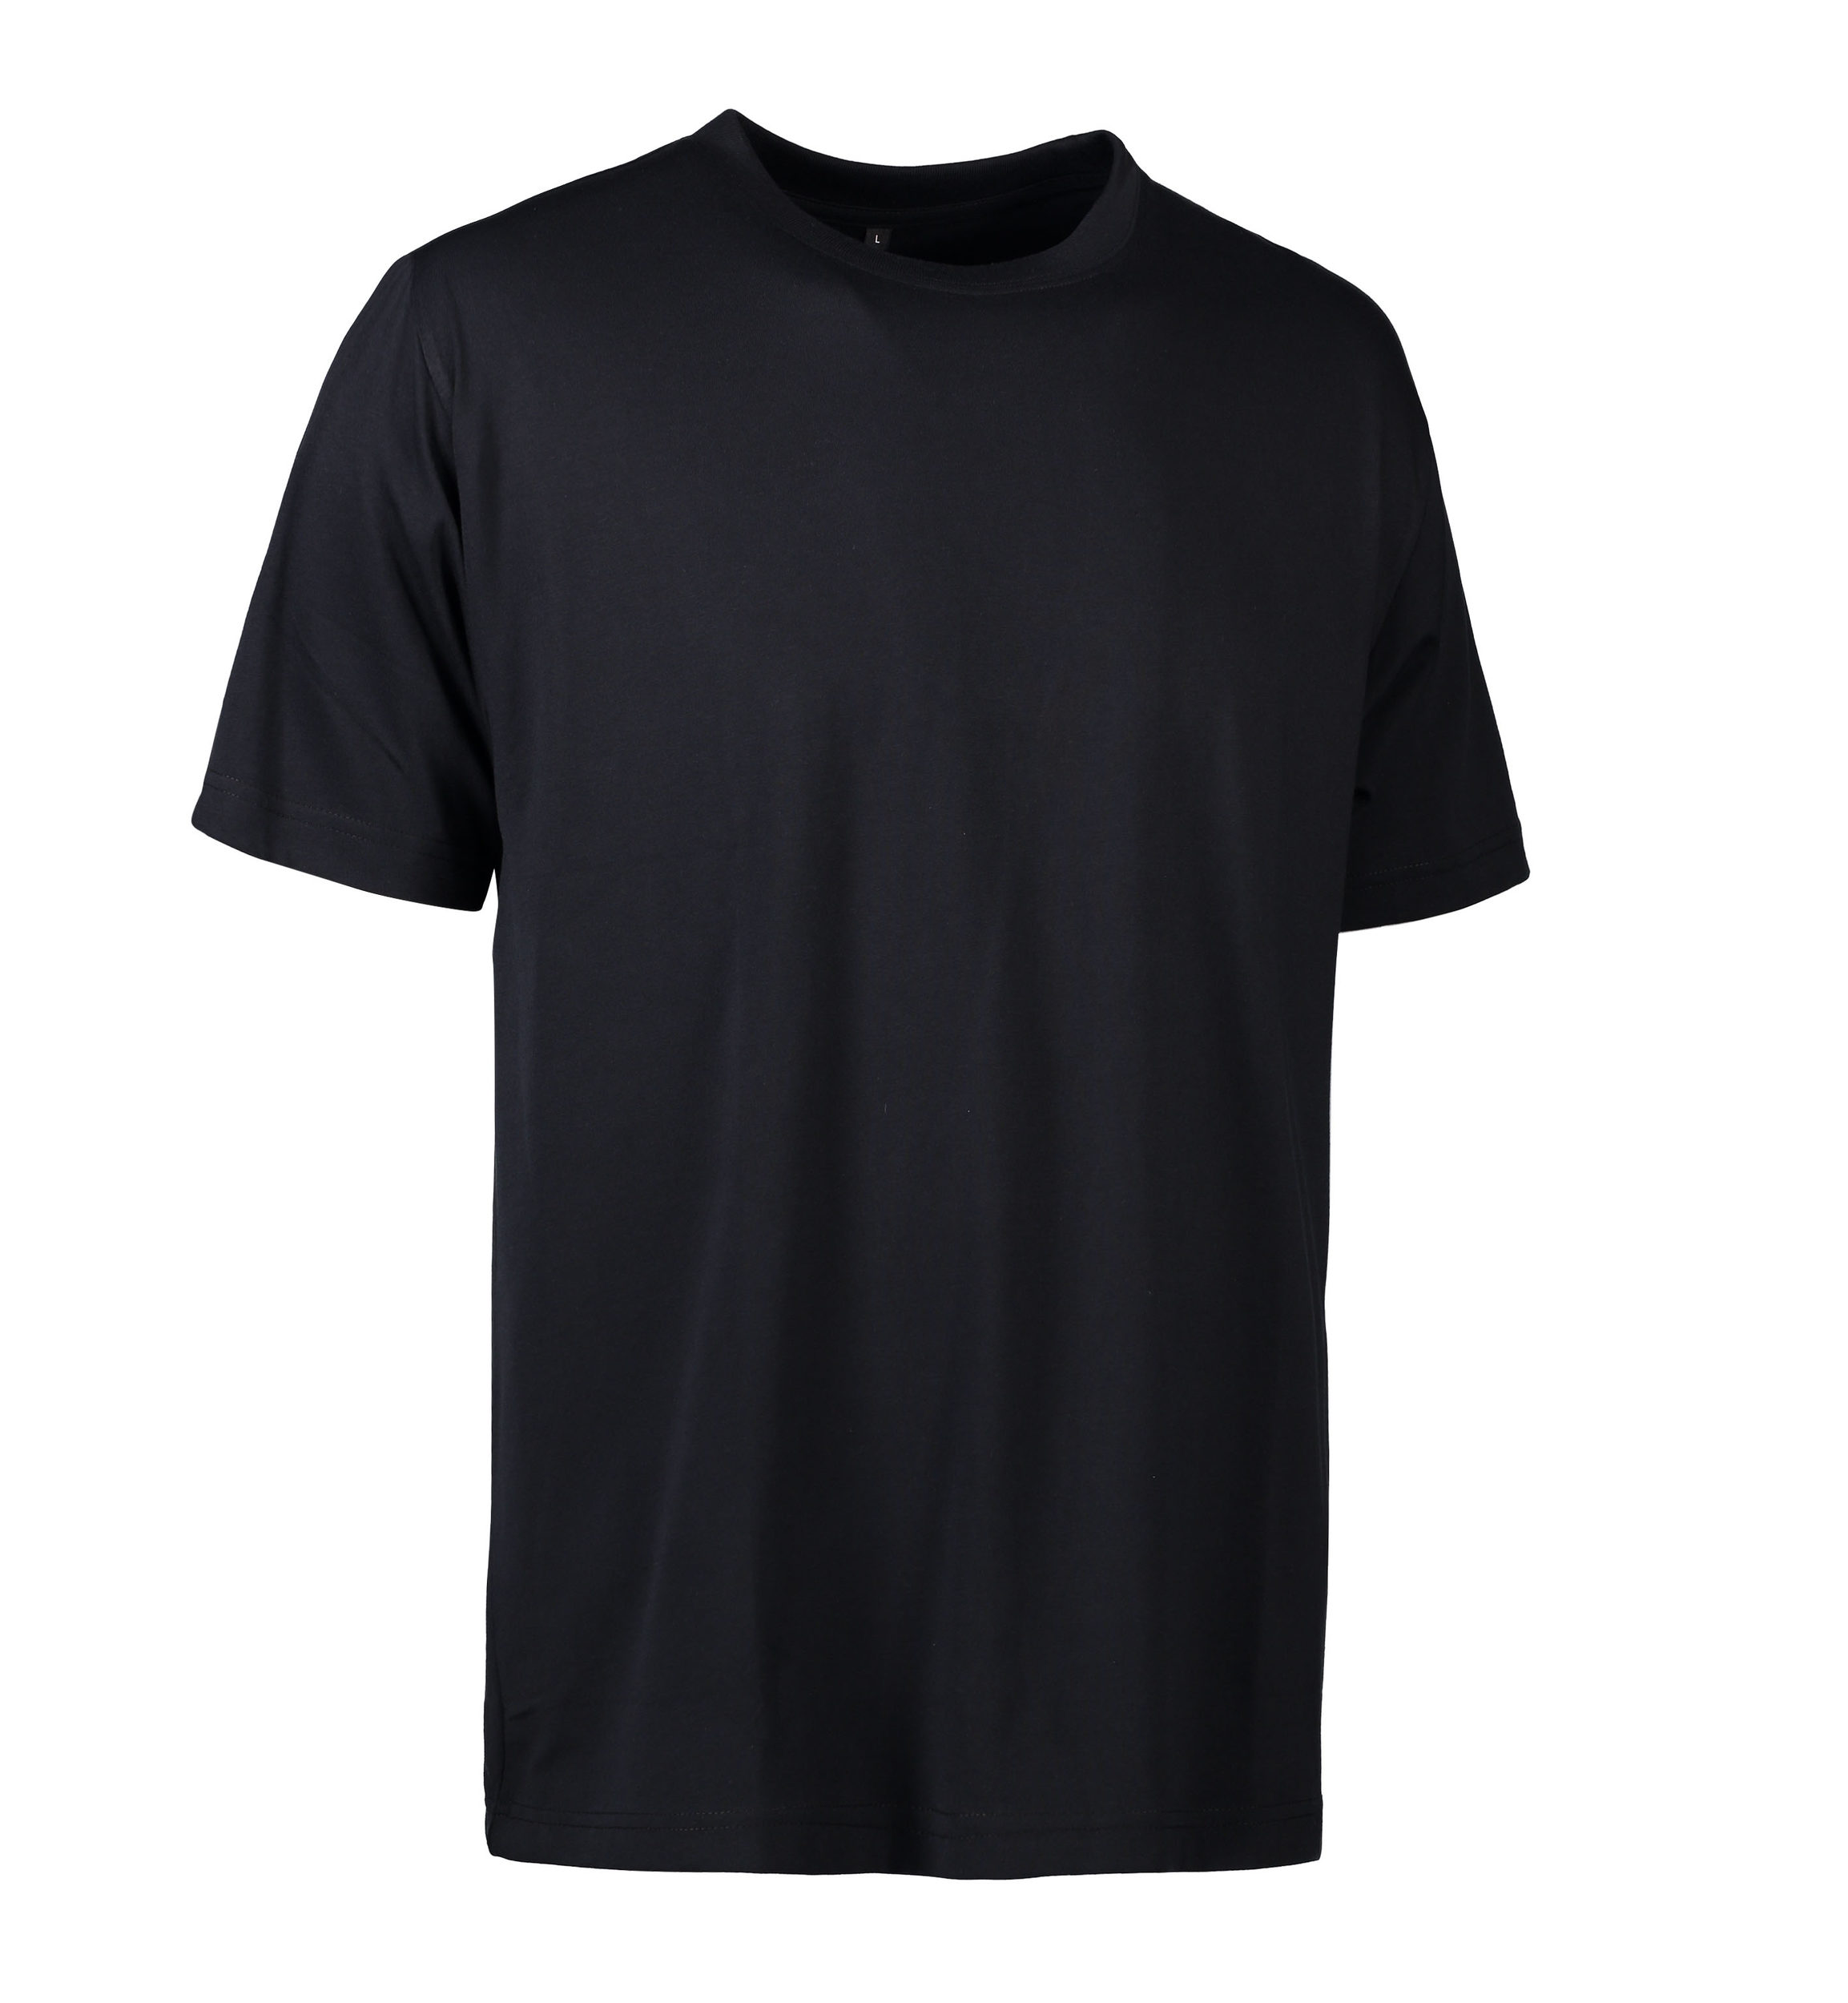 Se Slidstærk t-shirt i sort til mænd - L hos Sygeplejebutikken.dk